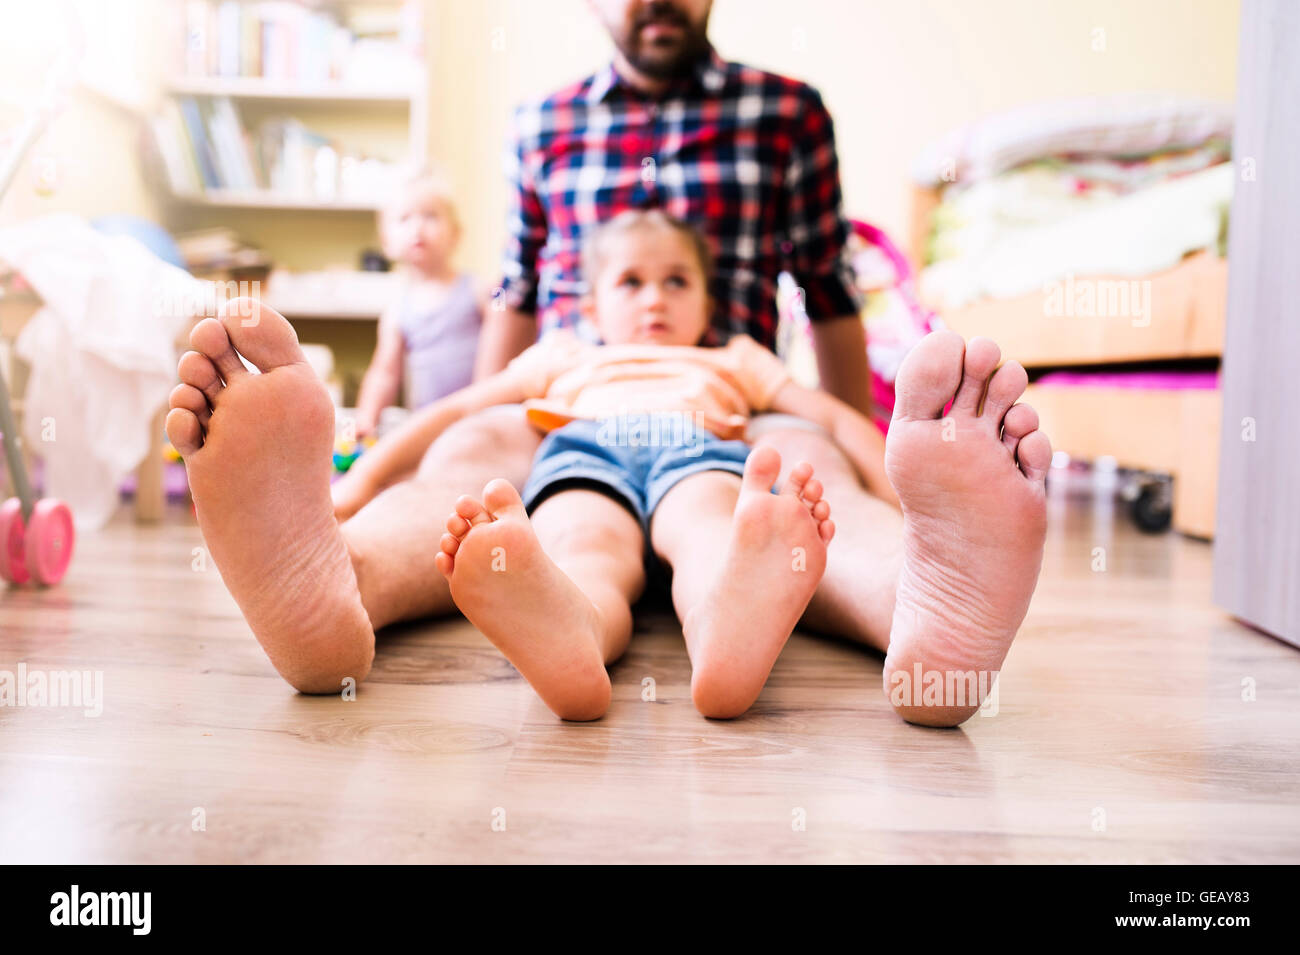 Père et fille à la maison, montrant leurs pieds nus Photo Stock - Alamy